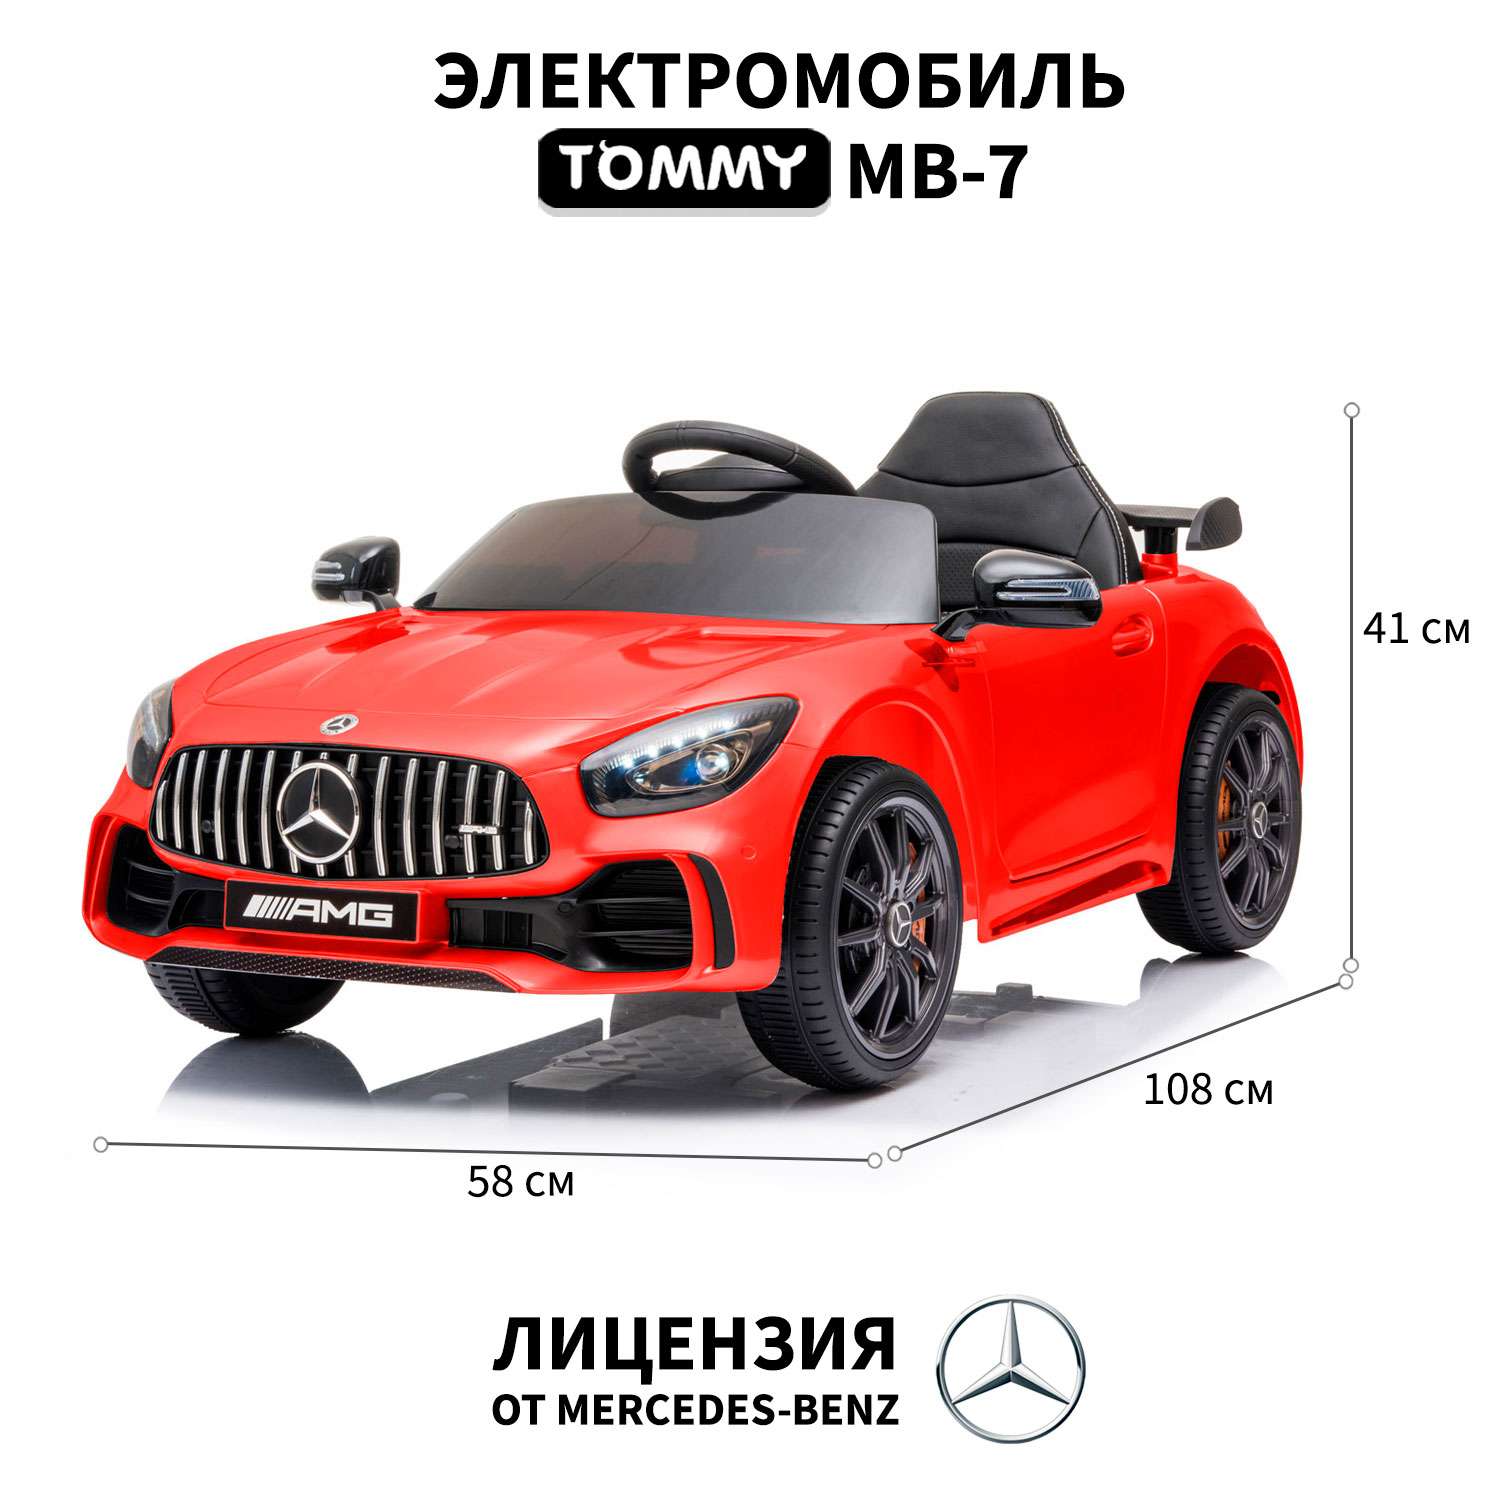 Купить бустер для детей в машину в Минске, автомобильные бустеры